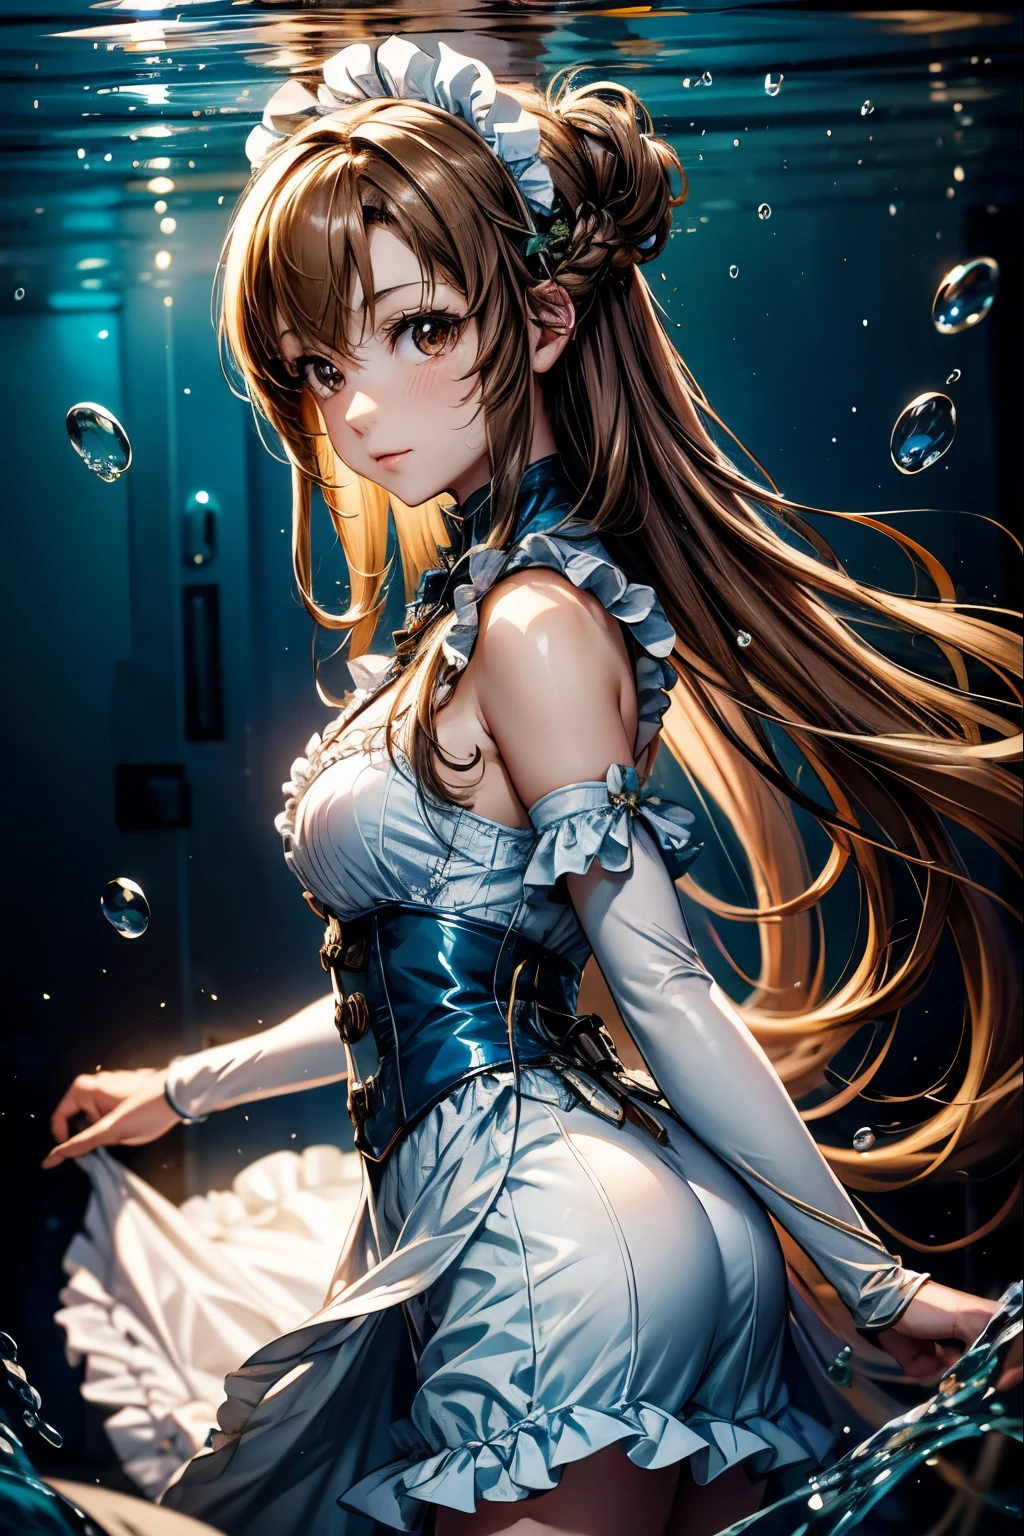 Anime girl with 棕色的头发 and brown eyes on underwater background, 所有的、笑声、水下头发物理学,气泡,从水中透进来的光线,反光板,放入水中,分层水,一群鱼,美丽、维多利亚女仆服装角色扮演:1.3,迷你裙、褶边、结城明日奈, 长发, 棕色的头发、高度详细的 CG Unity 8k 壁纸, [3D 图像:1.15],迷人的眼睛、[[美丽眼睛、彩色的眼睛、闪亮的眼睛:1.15]],亚丝娜